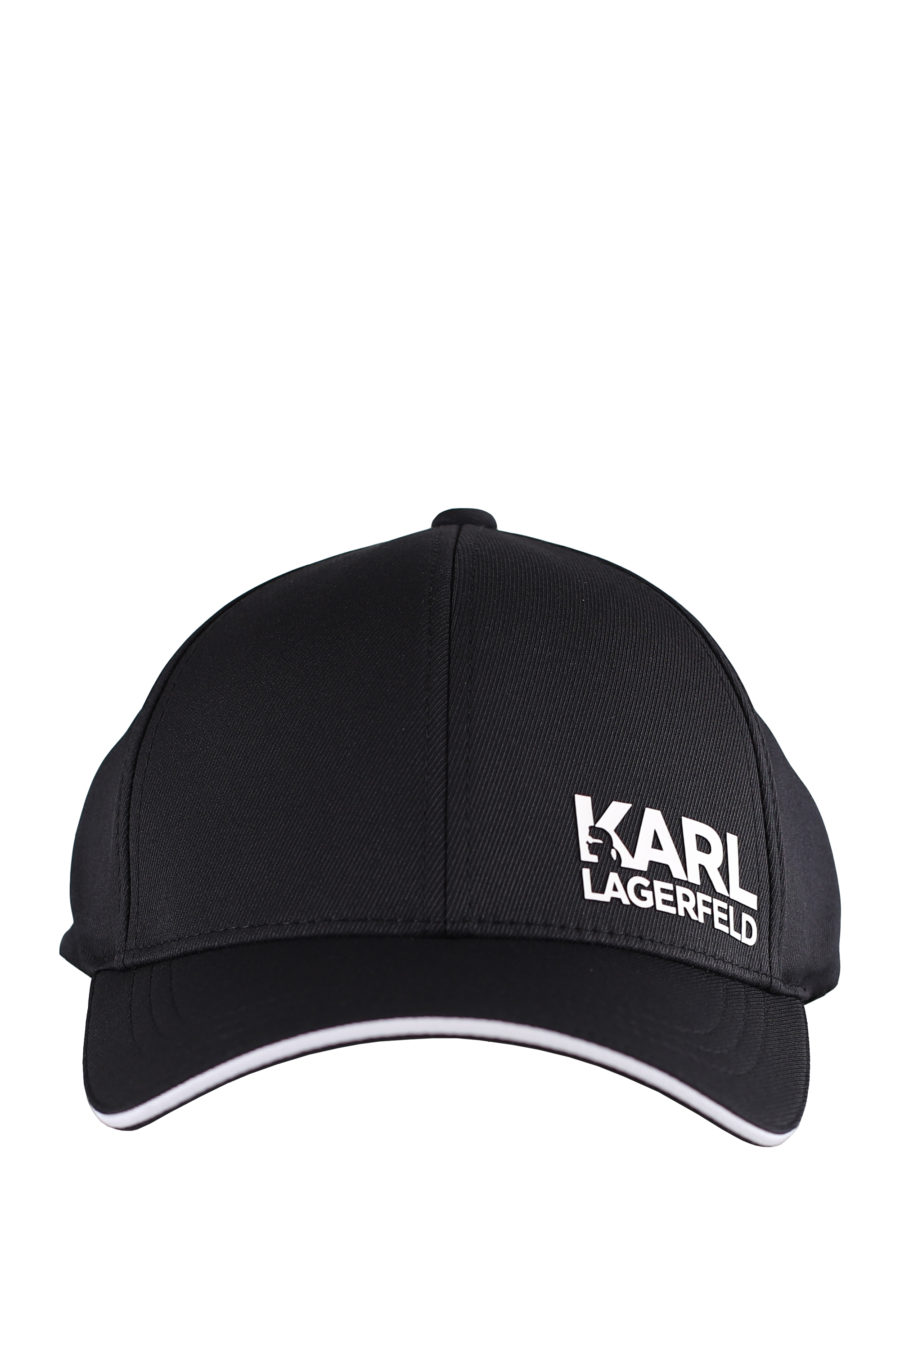 Black cap with white "Karl" logo - IMG 9593